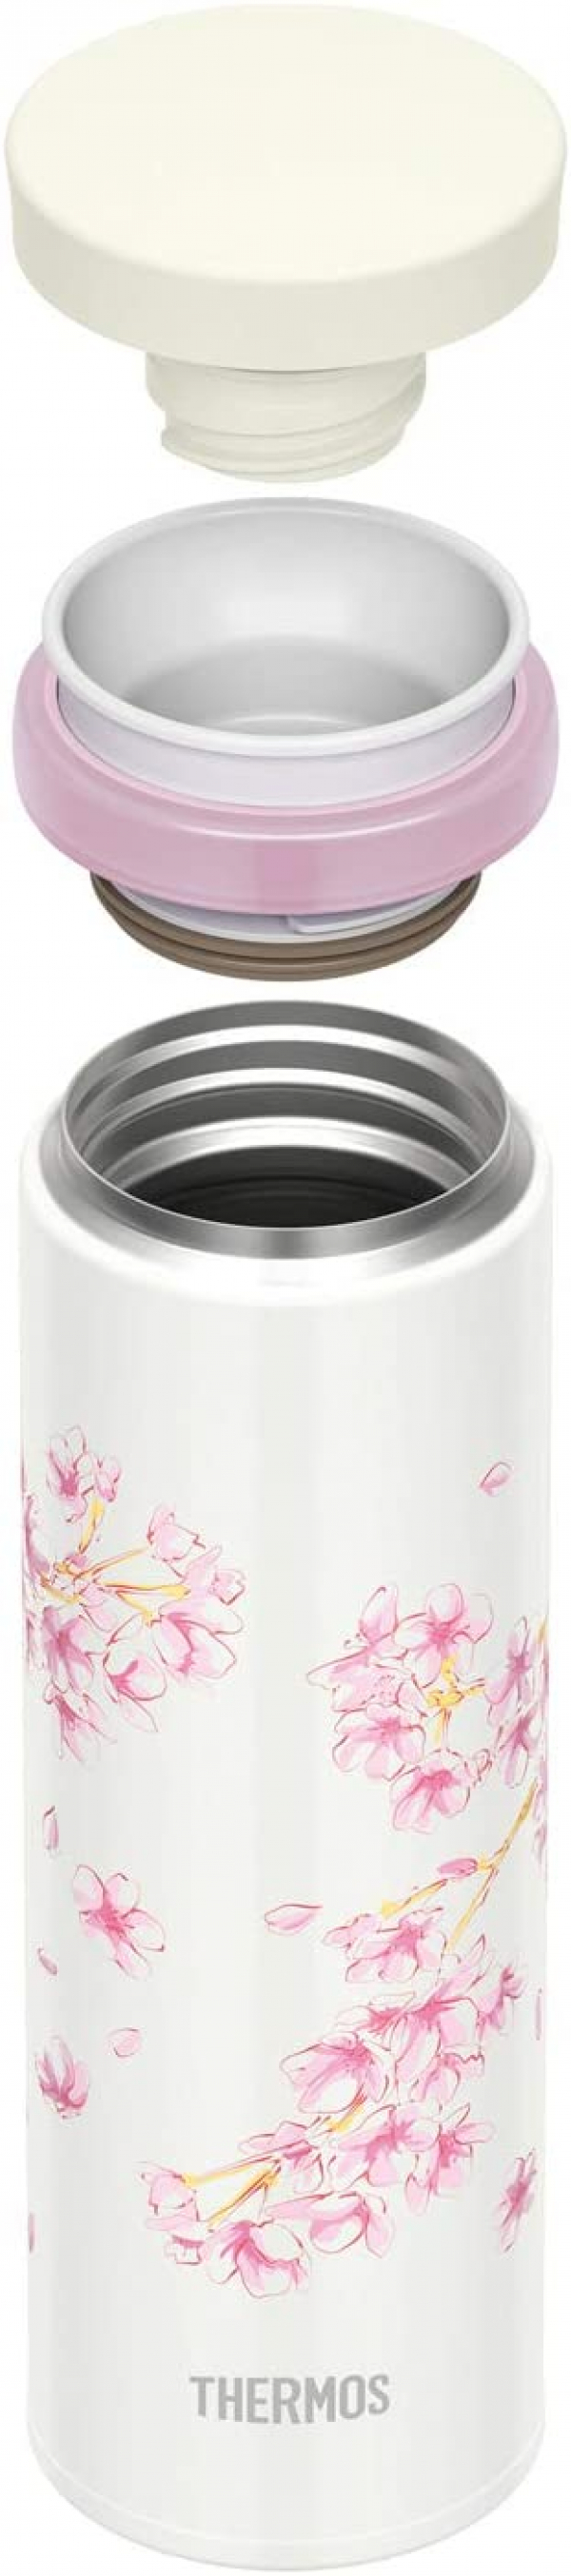 Вакуумный термос для напитков THERMOS Vacuum Insulated Mobile Mug